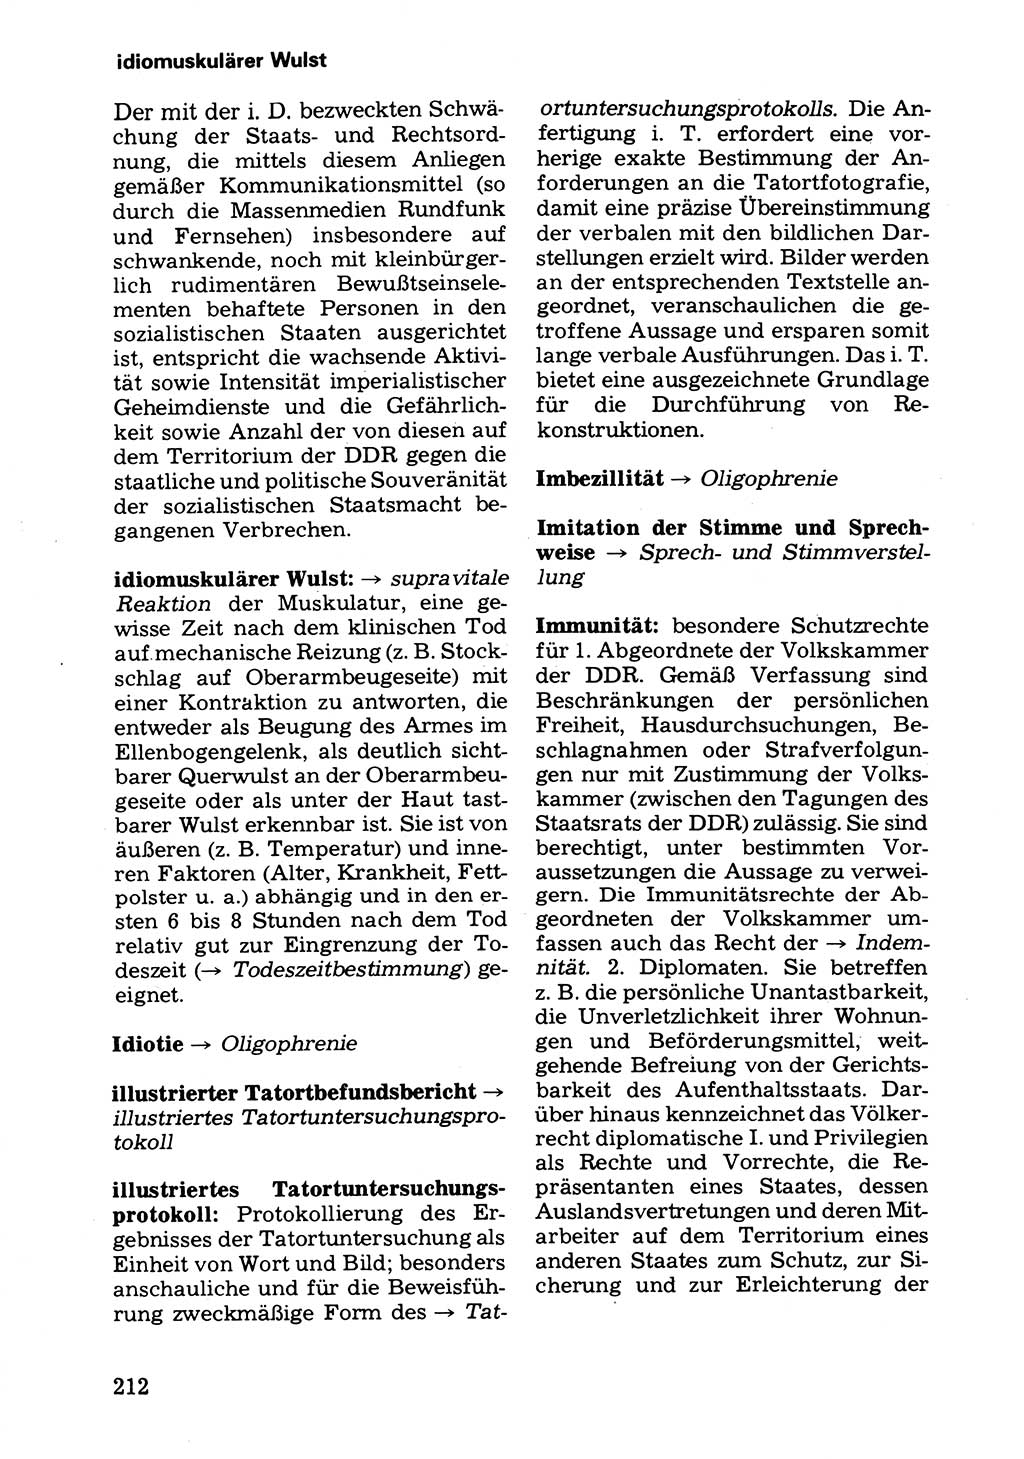 Wörterbuch der sozialistischen Kriminalistik [Deutsche Demokratische Republik (DDR)] 1981, Seite 212 (Wb. soz. Krim. DDR 1981, S. 212)